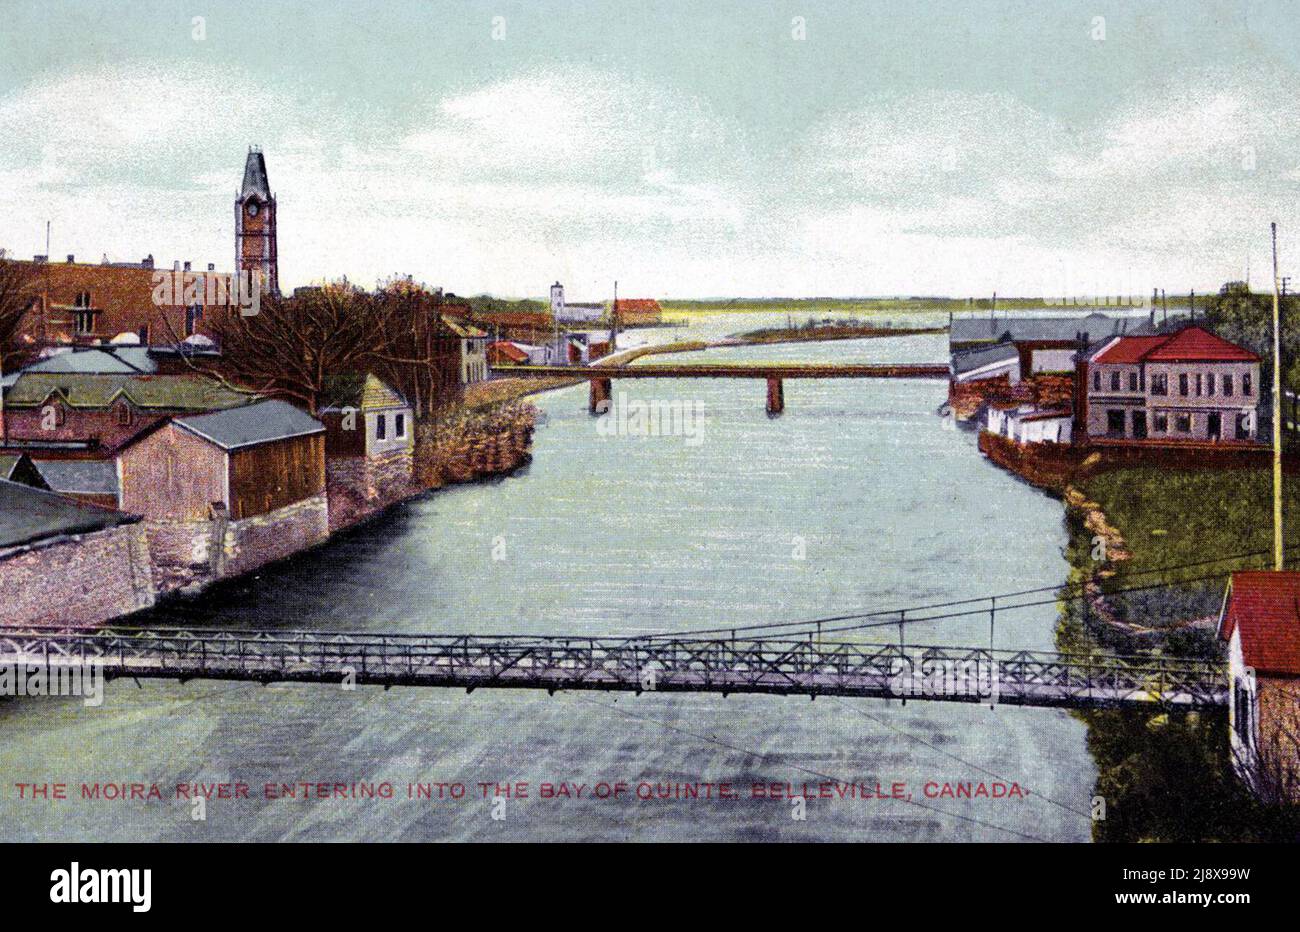 Ein Postkartenbild des Moira River, der in die Bucht von Quinte, Belleville, Ontario einmündet. Ca. 1910 Stockfoto